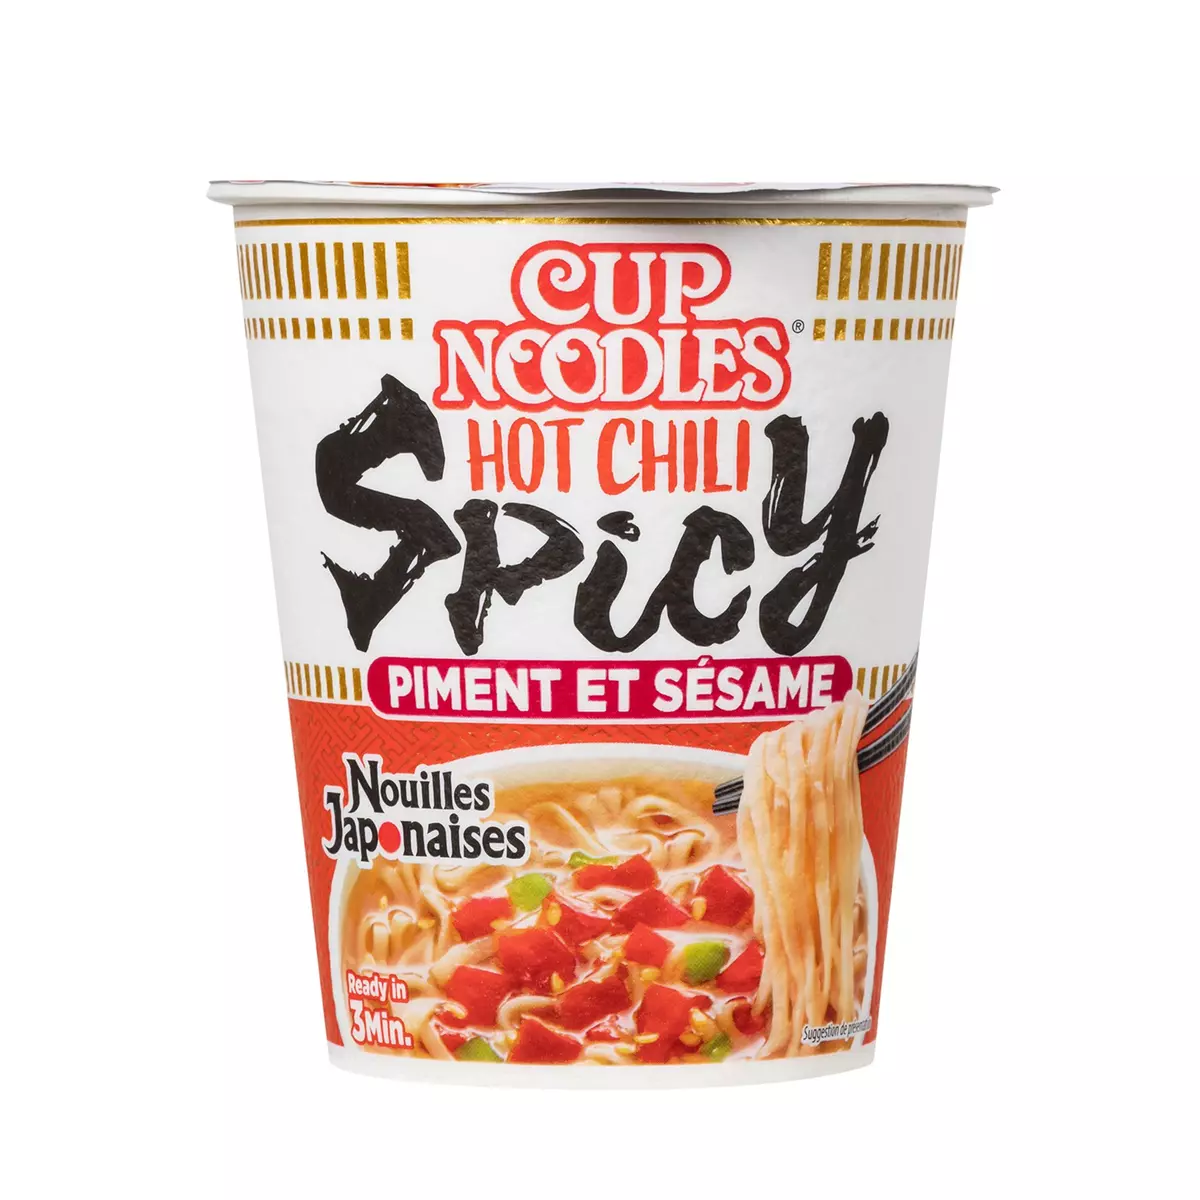 NISSIN Cup nouilles japonaises hot chili épicé piment et sésame 1 personne 66g